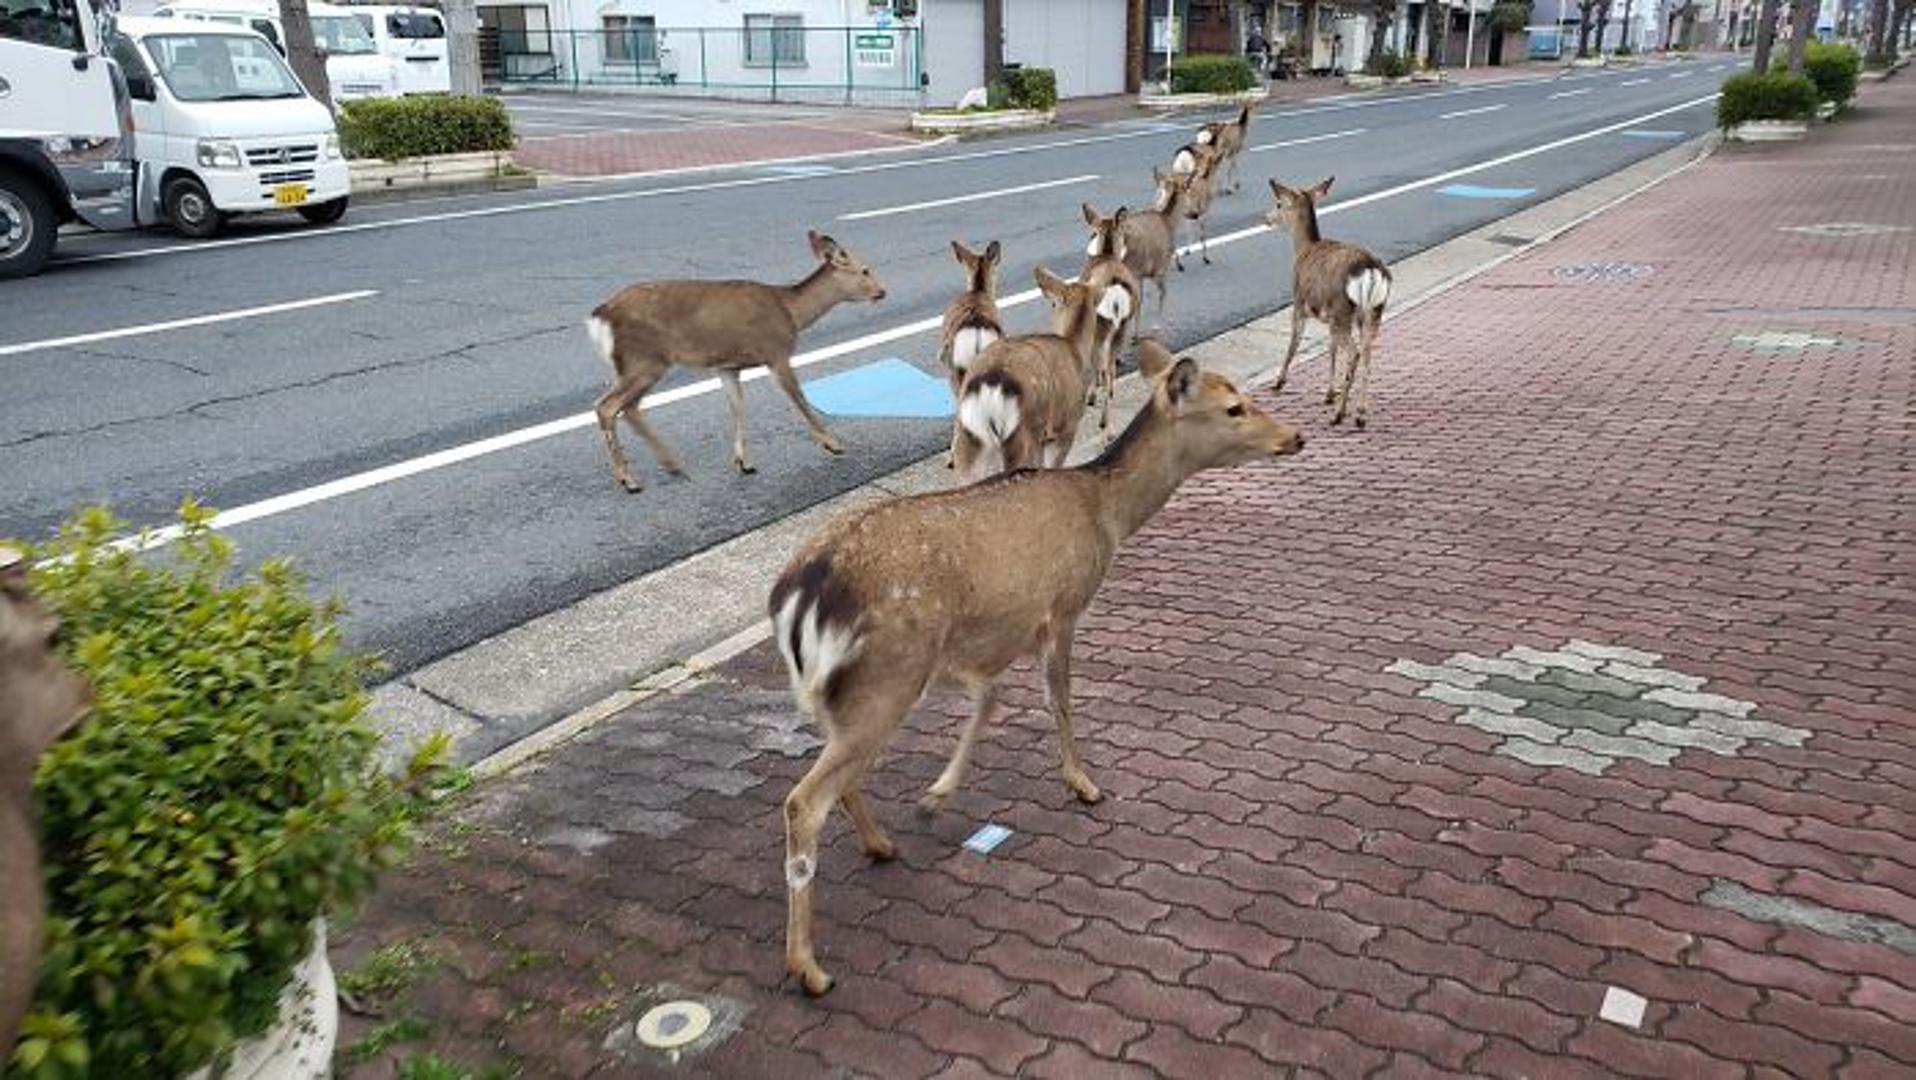 Kako sve više ljudi ulazi u izolaciji radi sprječavanja širenja koronavirusa, ulice su sve praznije. Životinje u Japanu, Tajlandu i Italiji iskoristili su ovu priliku za hodanje ulicama. Tako su ovi jeleni u Nari, Japanu prošetali ulicama.